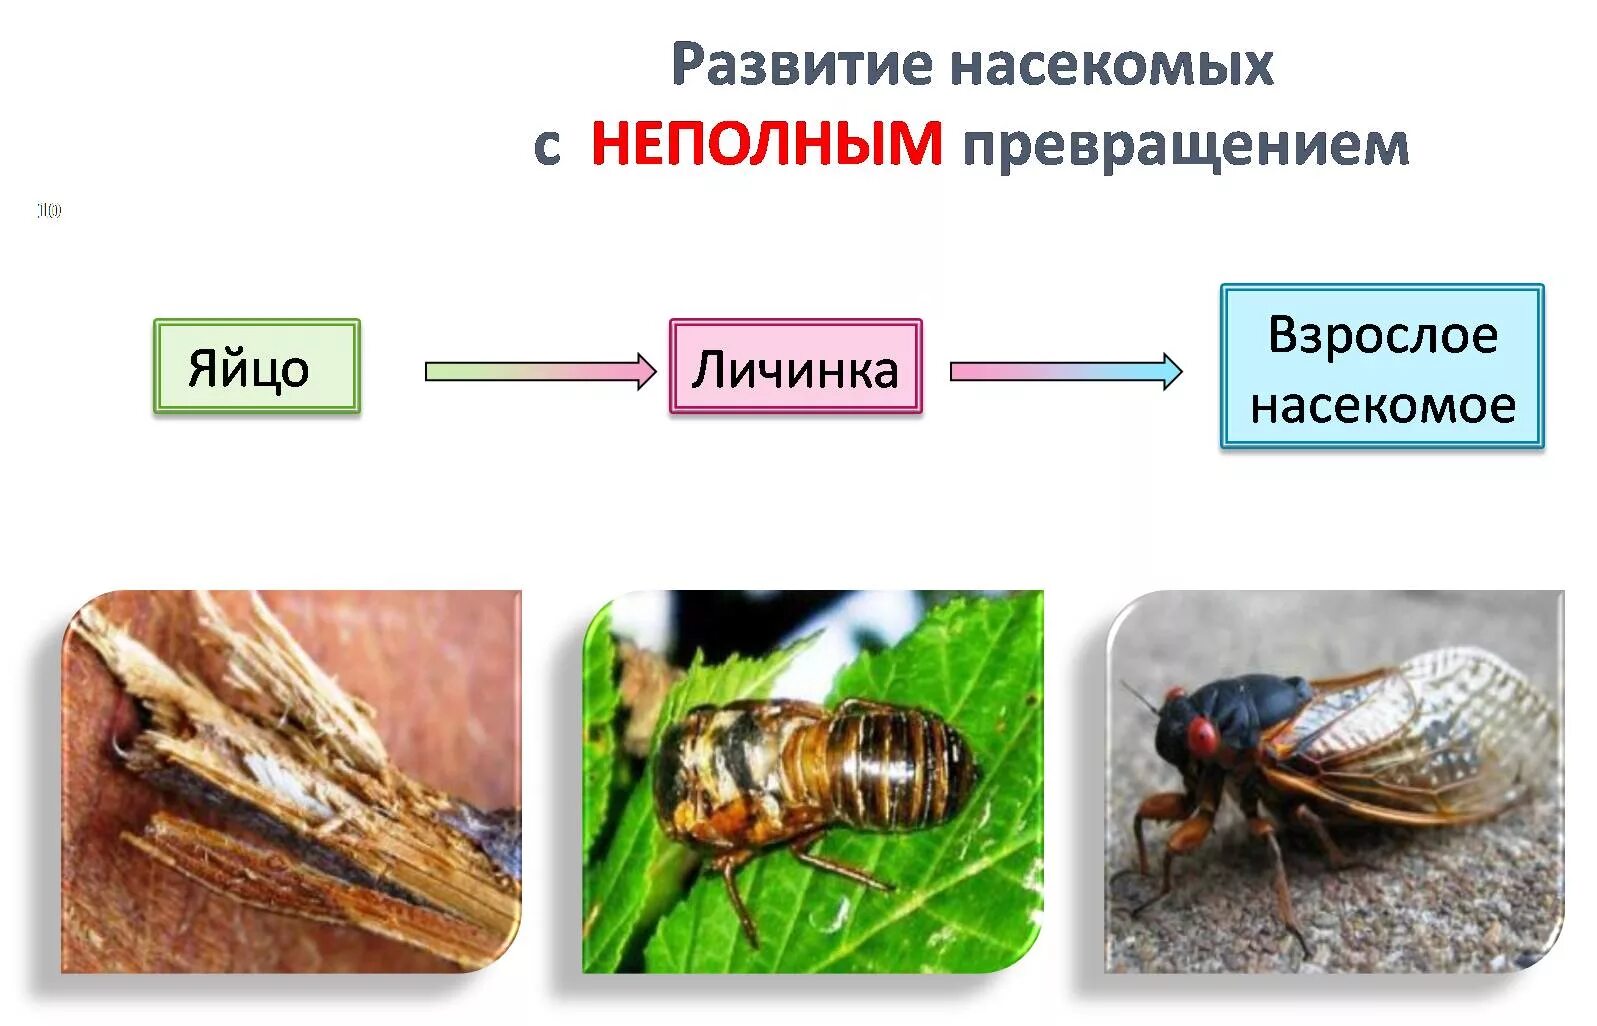 Развитие с неполным метаморфозом у насекомых. Размножение насекомых с полным и неполным превращением. Развитие с неполным превращением личинка. Схема развития насекомых с неполным превращением. Стадии развития с метаморфозом